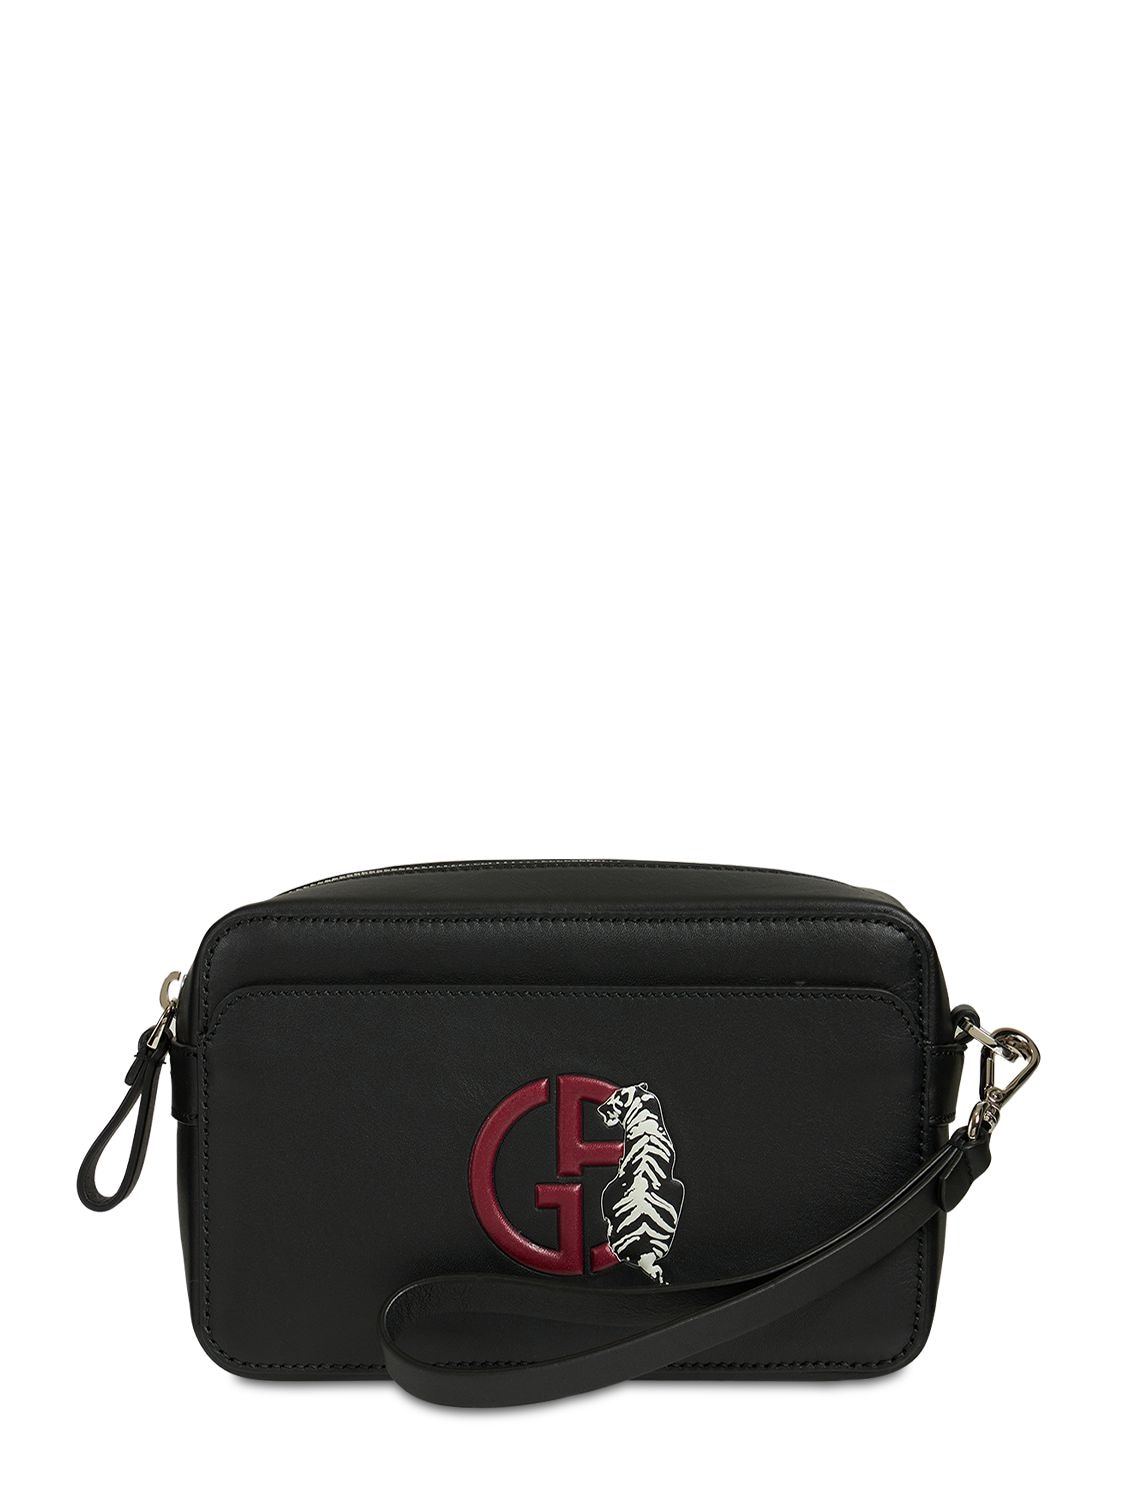 Giorgio Armani Logo Tiger Leather Toiletry Bag In Black | ModeSens